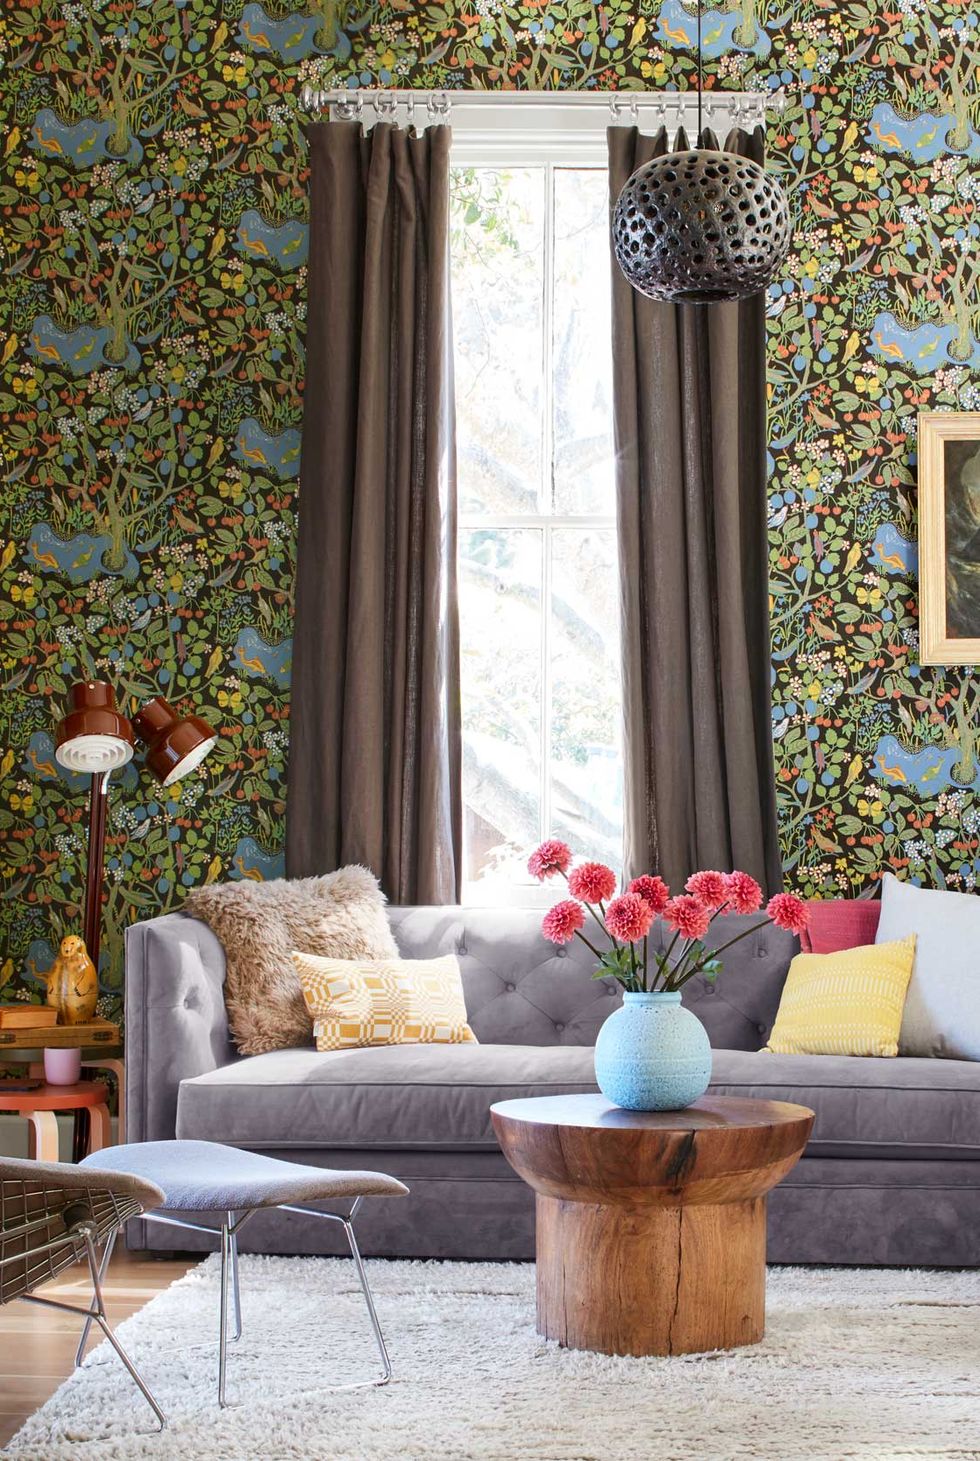 hình ảnh phòng khách nhỏ với sofa màu ghi xám, giấy dán tường họa tiết lá xanh, rèm cửa màu nâu lắp cao, đèn sàn, bình hoa tươi đặt trên bàn trà